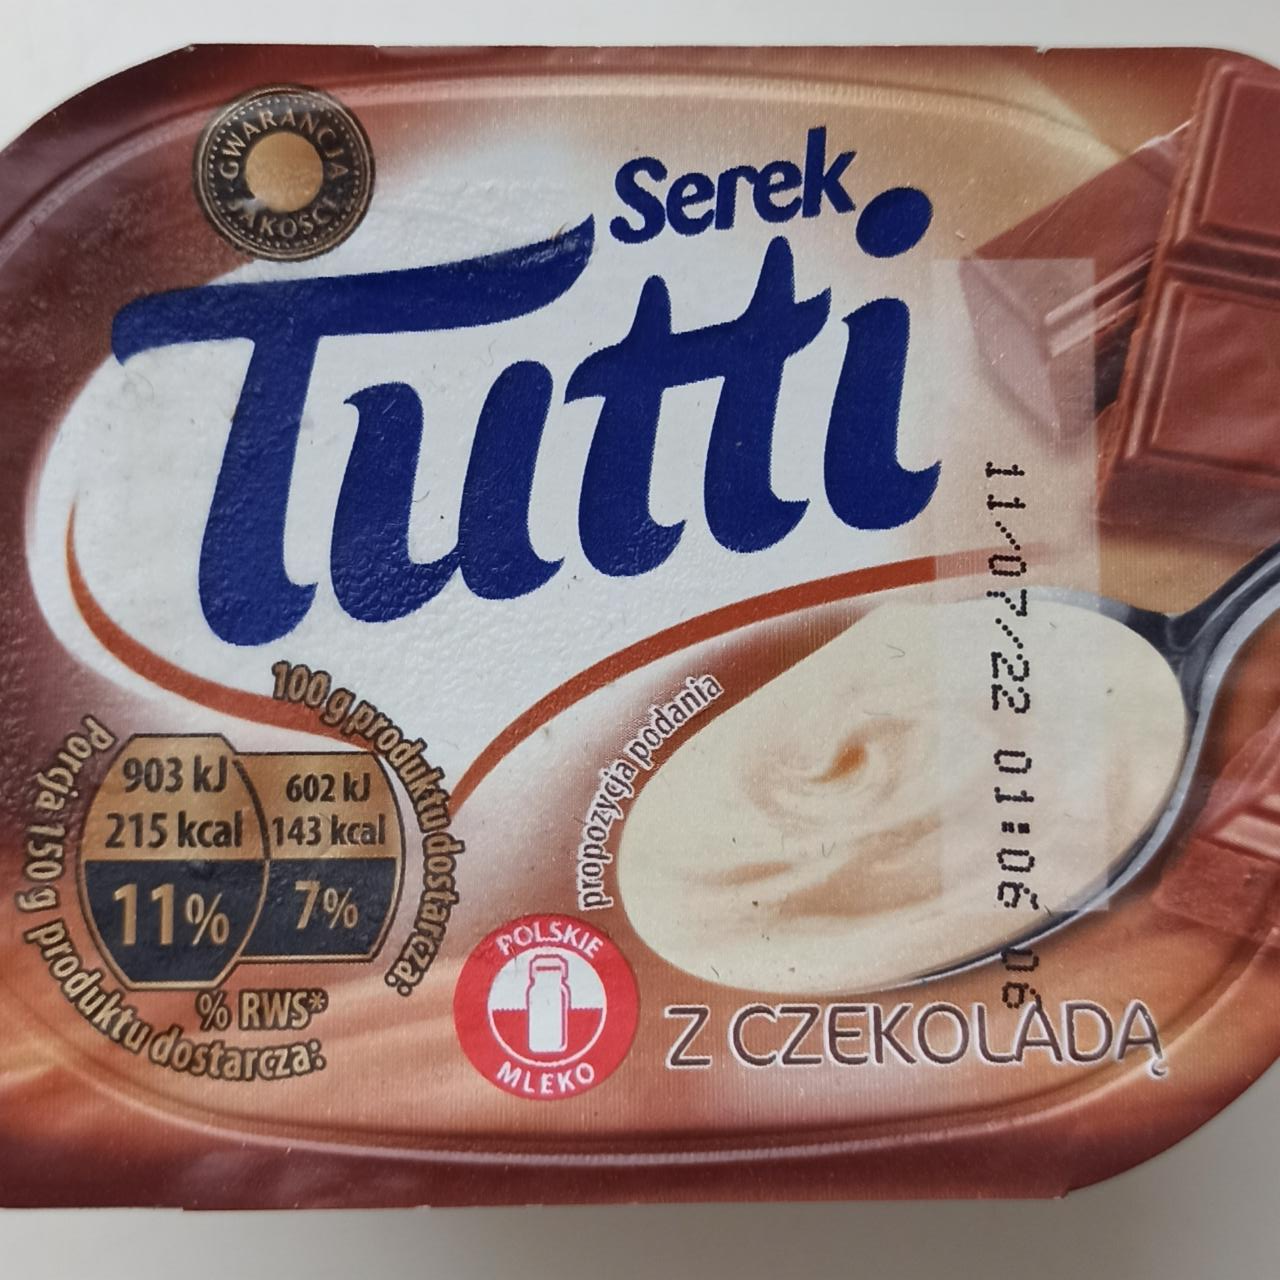 Fotografie - Tutti serek czekolada Tutti